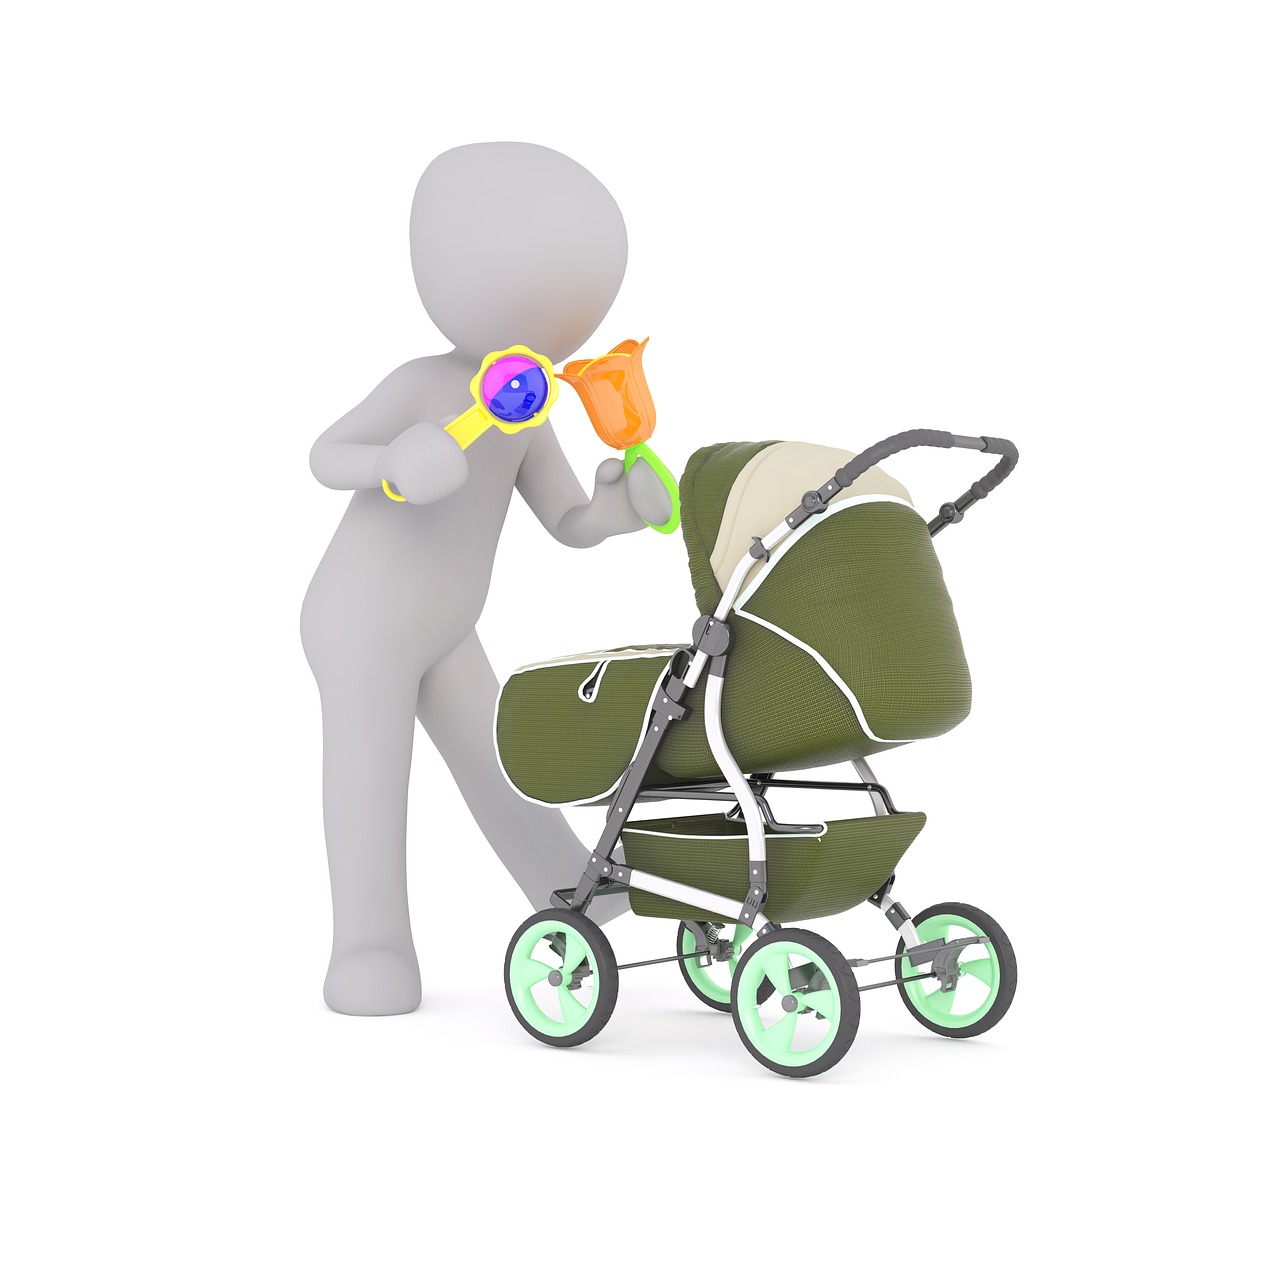 Illustratie van poppetje dat een babysitter voorstelt; met babyspeelgoed in de hand staand naast een kinderwagen